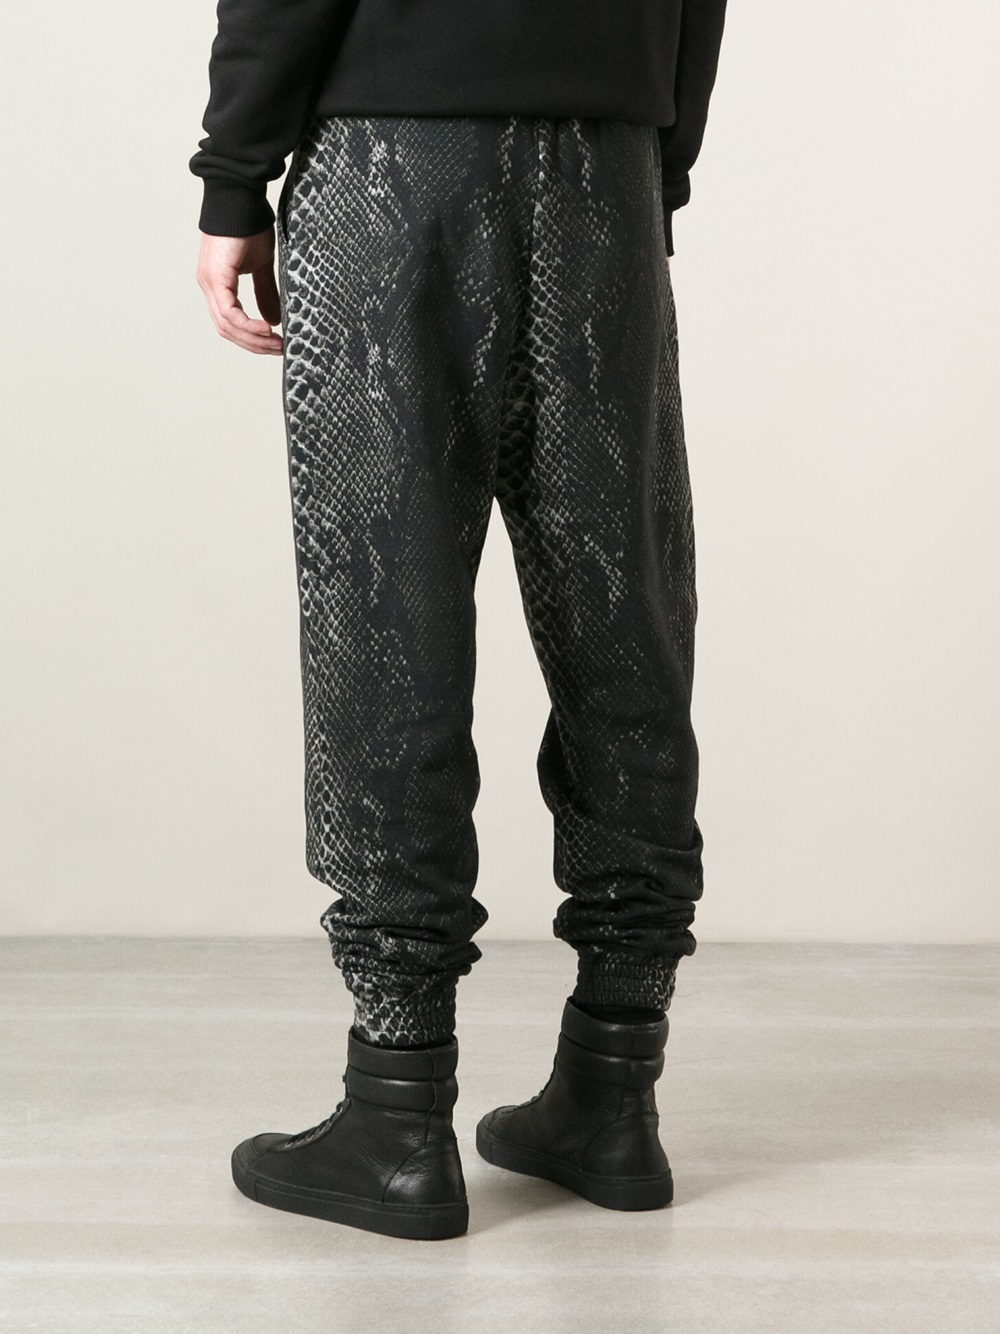 Lyst - Christopher Kane Snakeskin Print Tapered Trousers in Black for Men